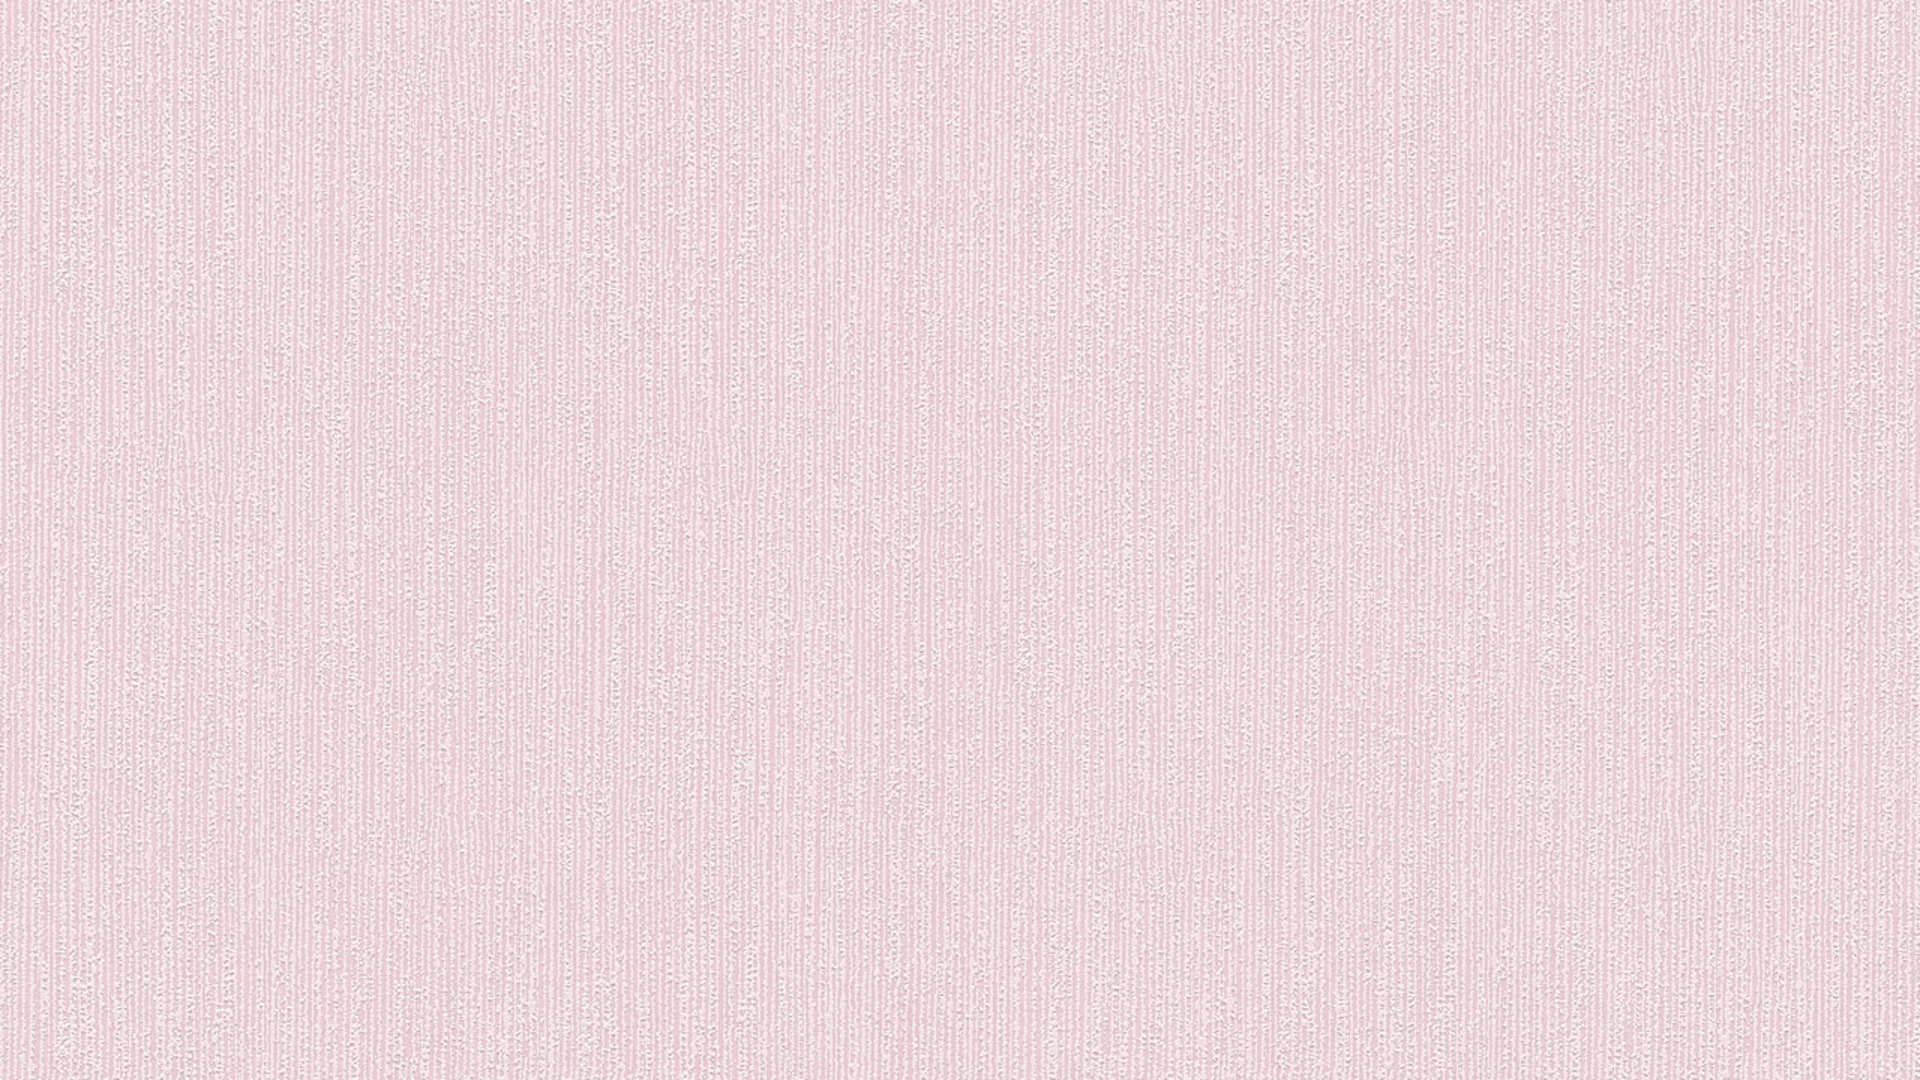 Vinyltapete rosa Modern Uni Styleguide Trend Colours 2021 885